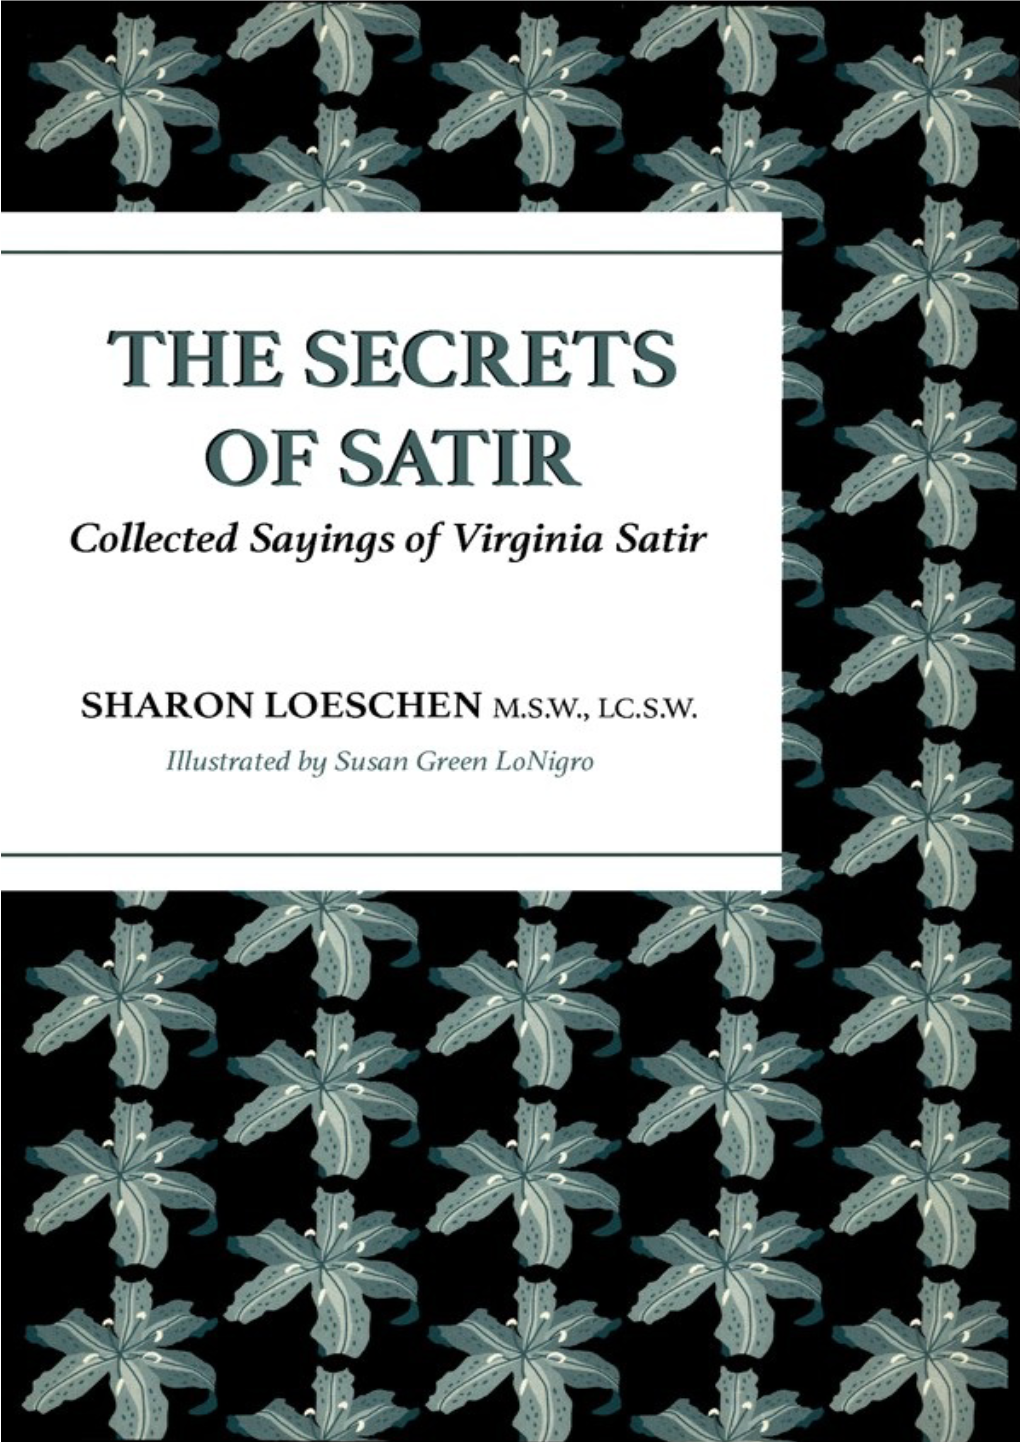 THE SECRETS of SATIR: Collected Sayings of Virginia Satir